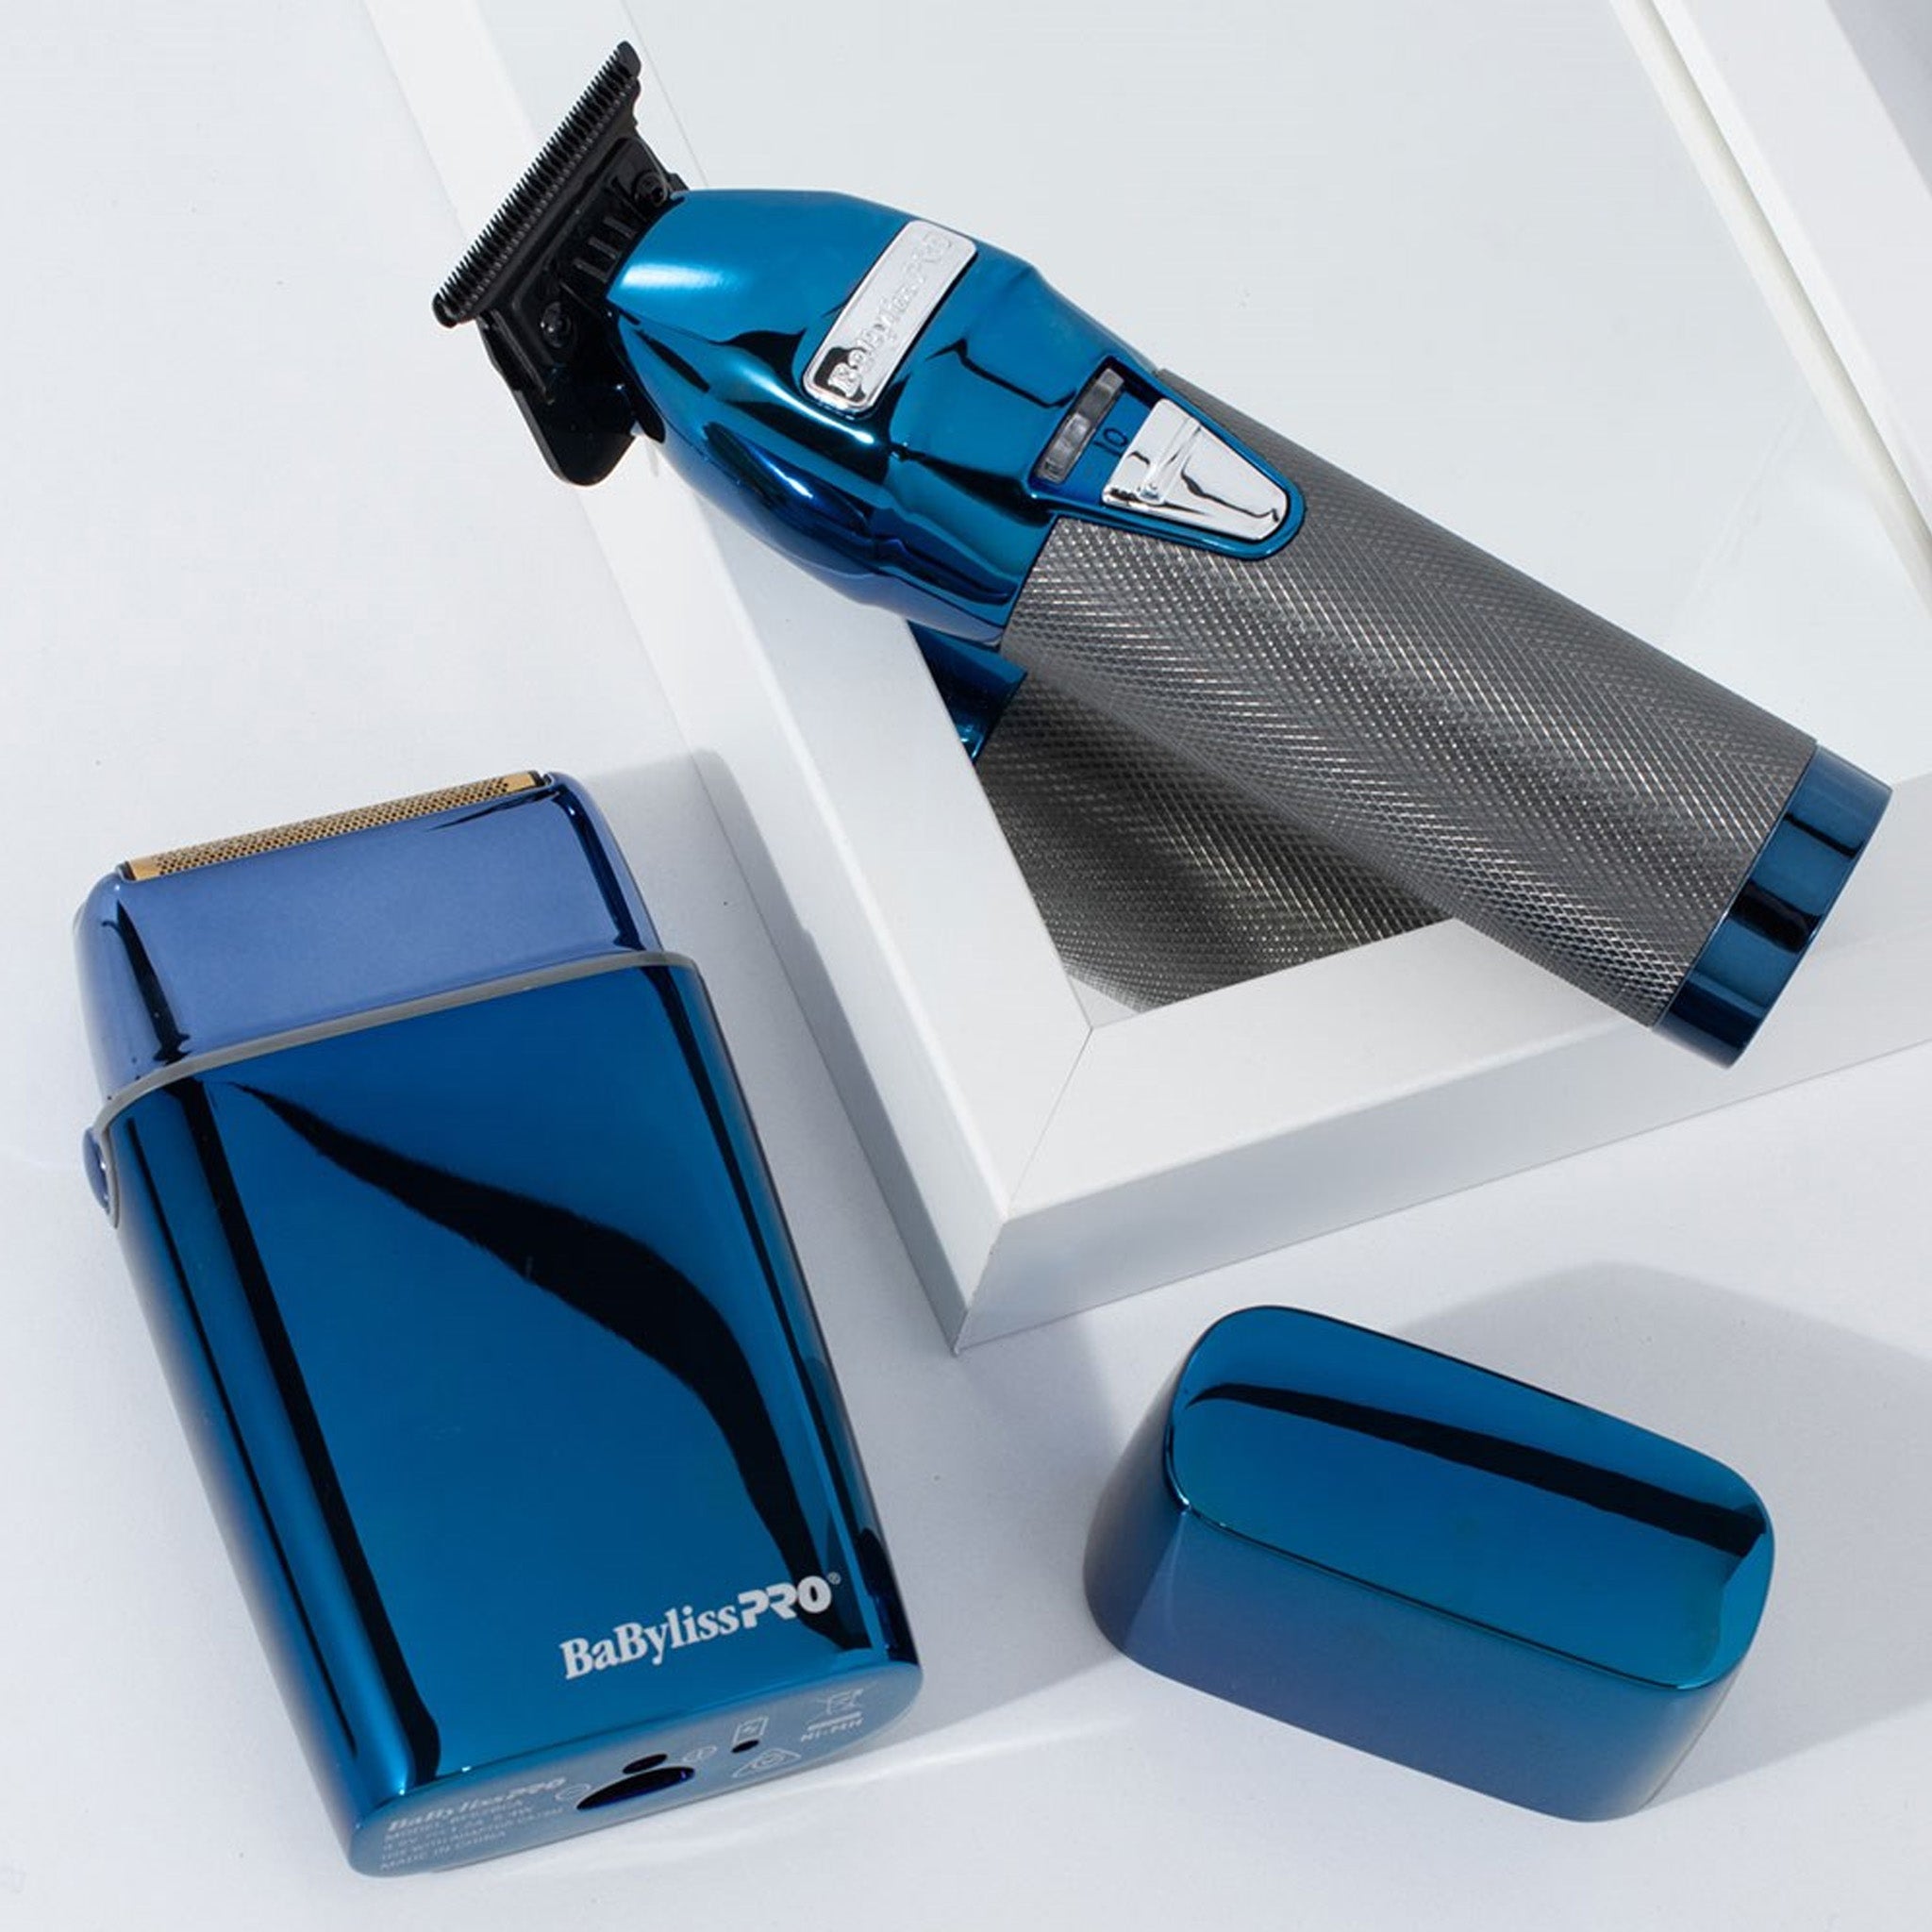 BabylissPRO BlueFX Outliner Trimmer & Foil Shaver Duo